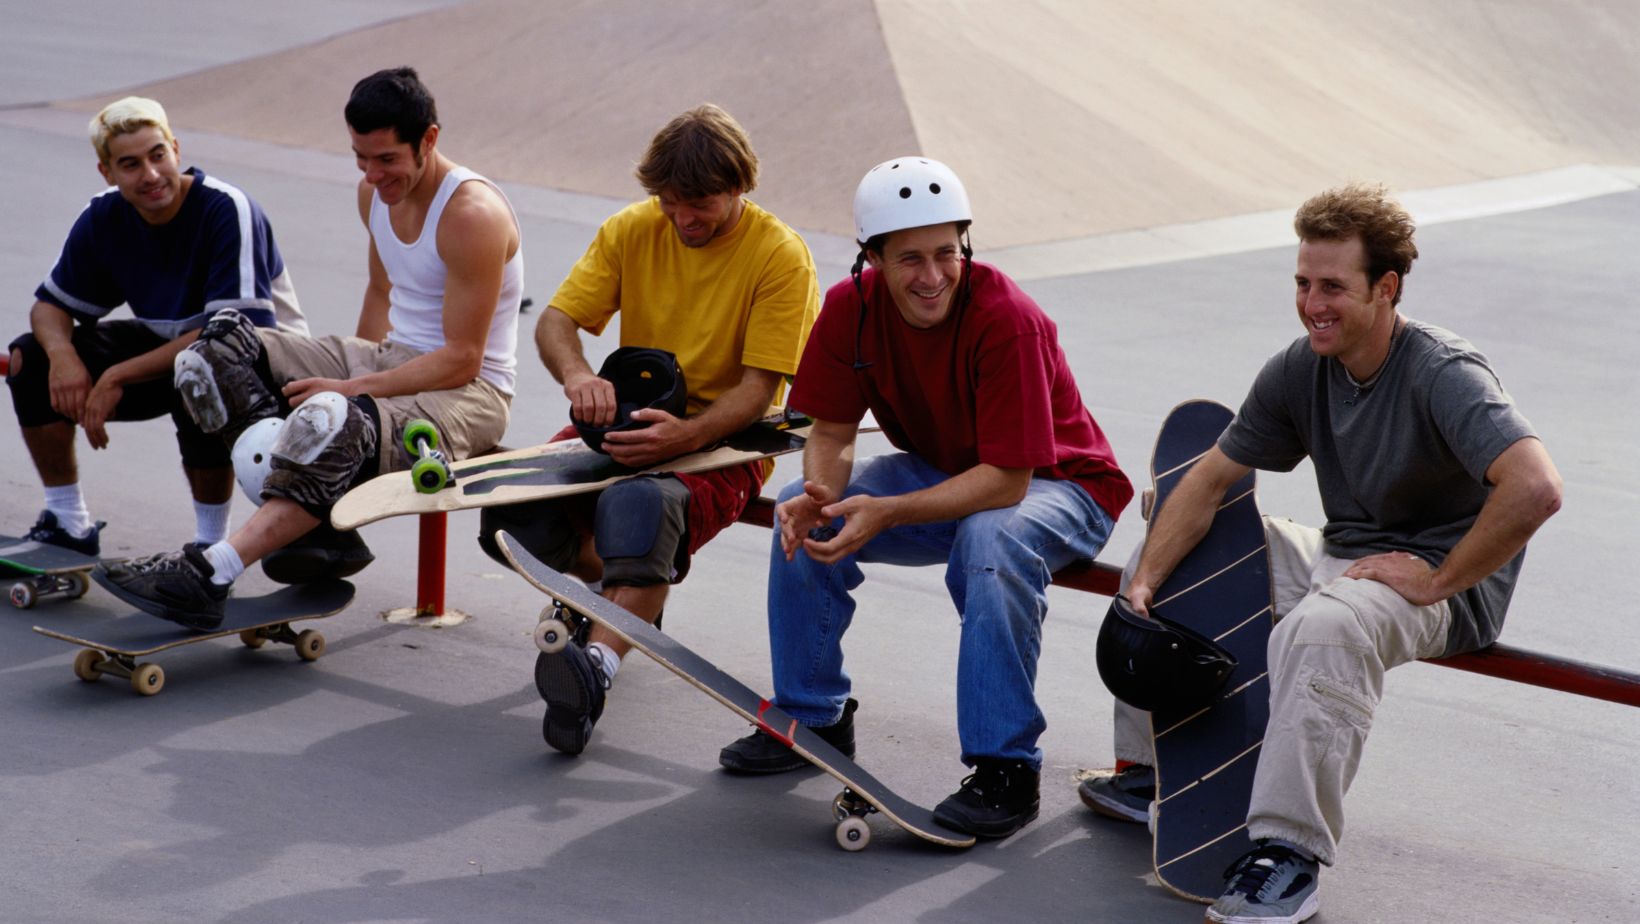 skateboards team